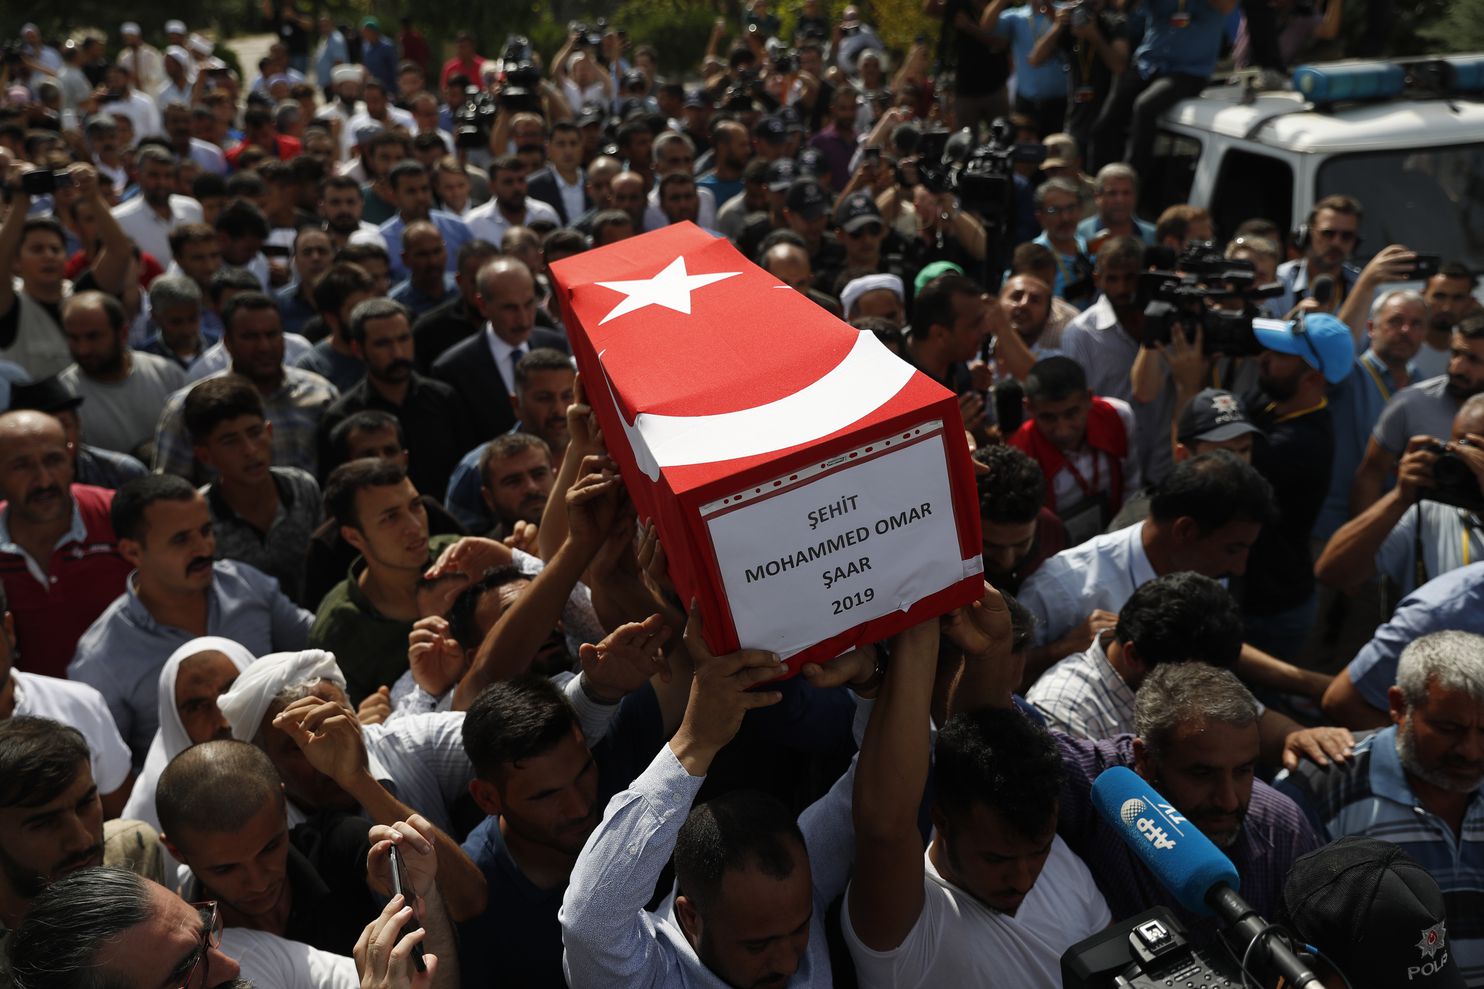 Πρακτορείο Anadolu: «5 ανήλικα παιδιά σκοτώθηκαν στην Τουρκία από τους βομβαρδισμούς των Κούρδων»